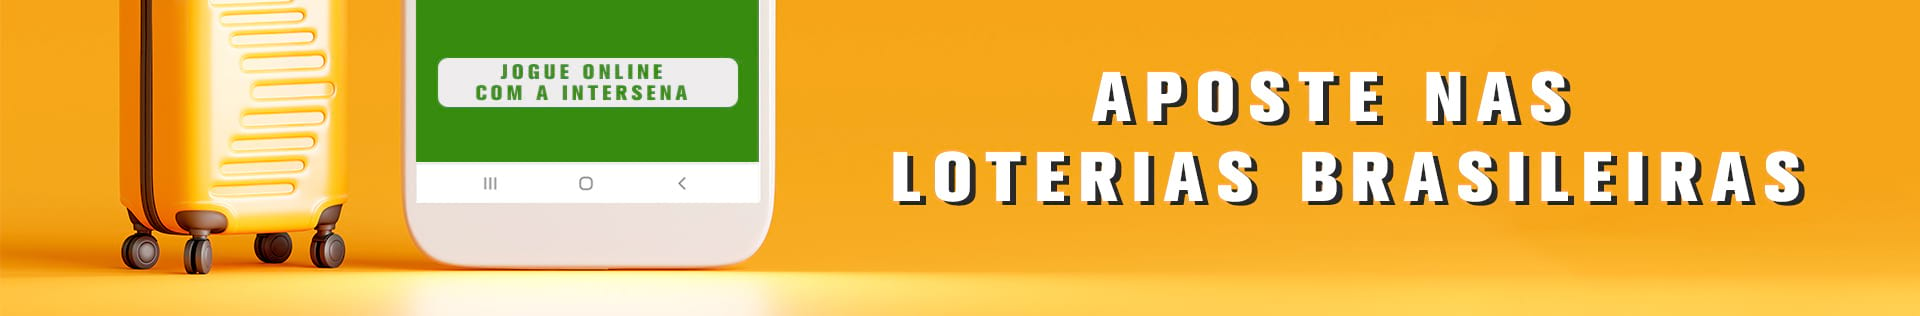 www loterias